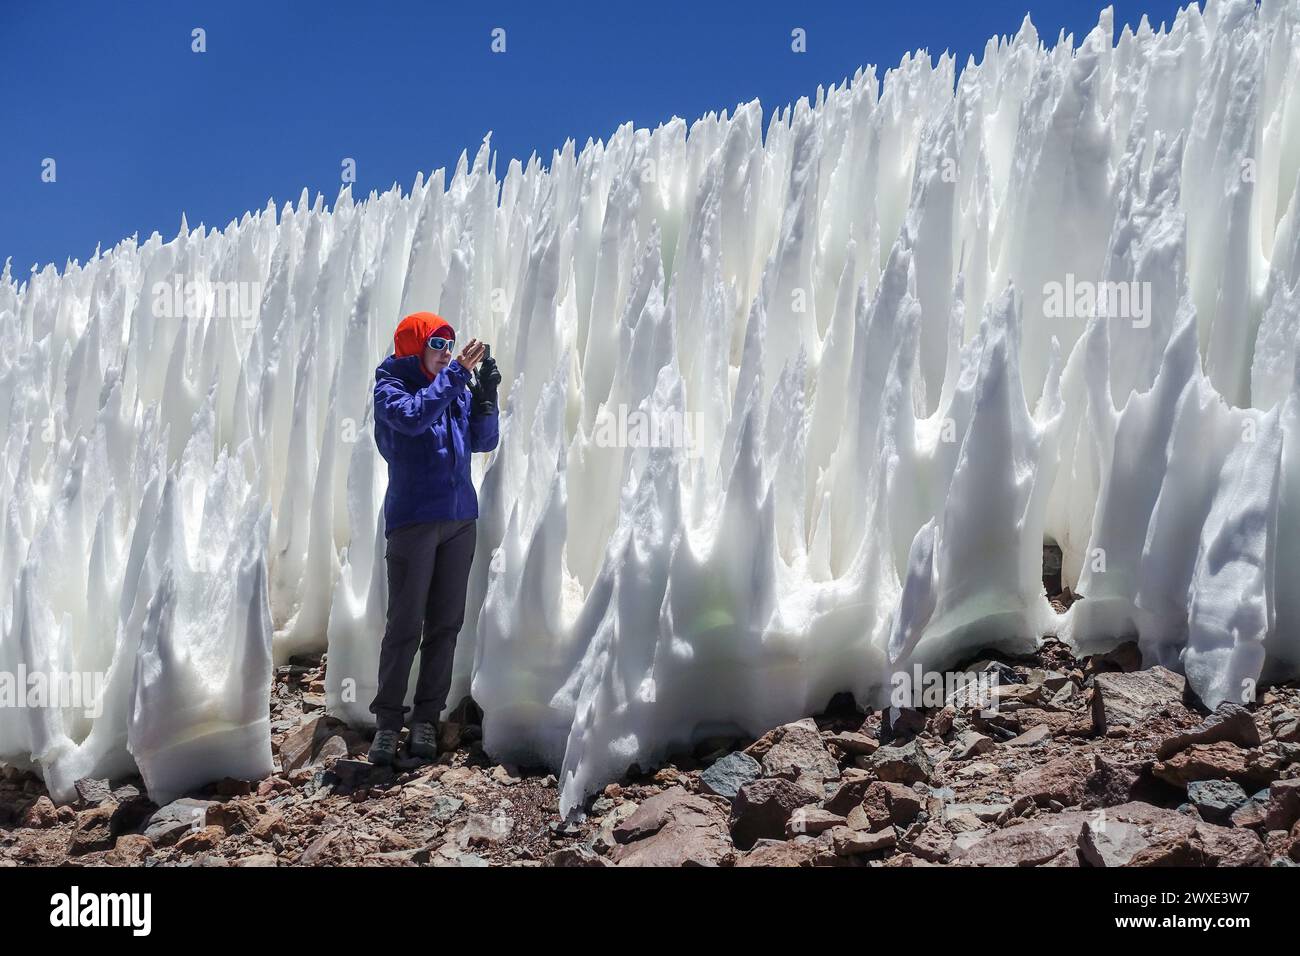 Frau in der Atacama-Wüste nahe Ojos del Salado in Chile fängt penitentes mit ihrer Kamera ein. Die Eisformationen schaffen eine einzigartige und surreale Landschaft. Stockfoto